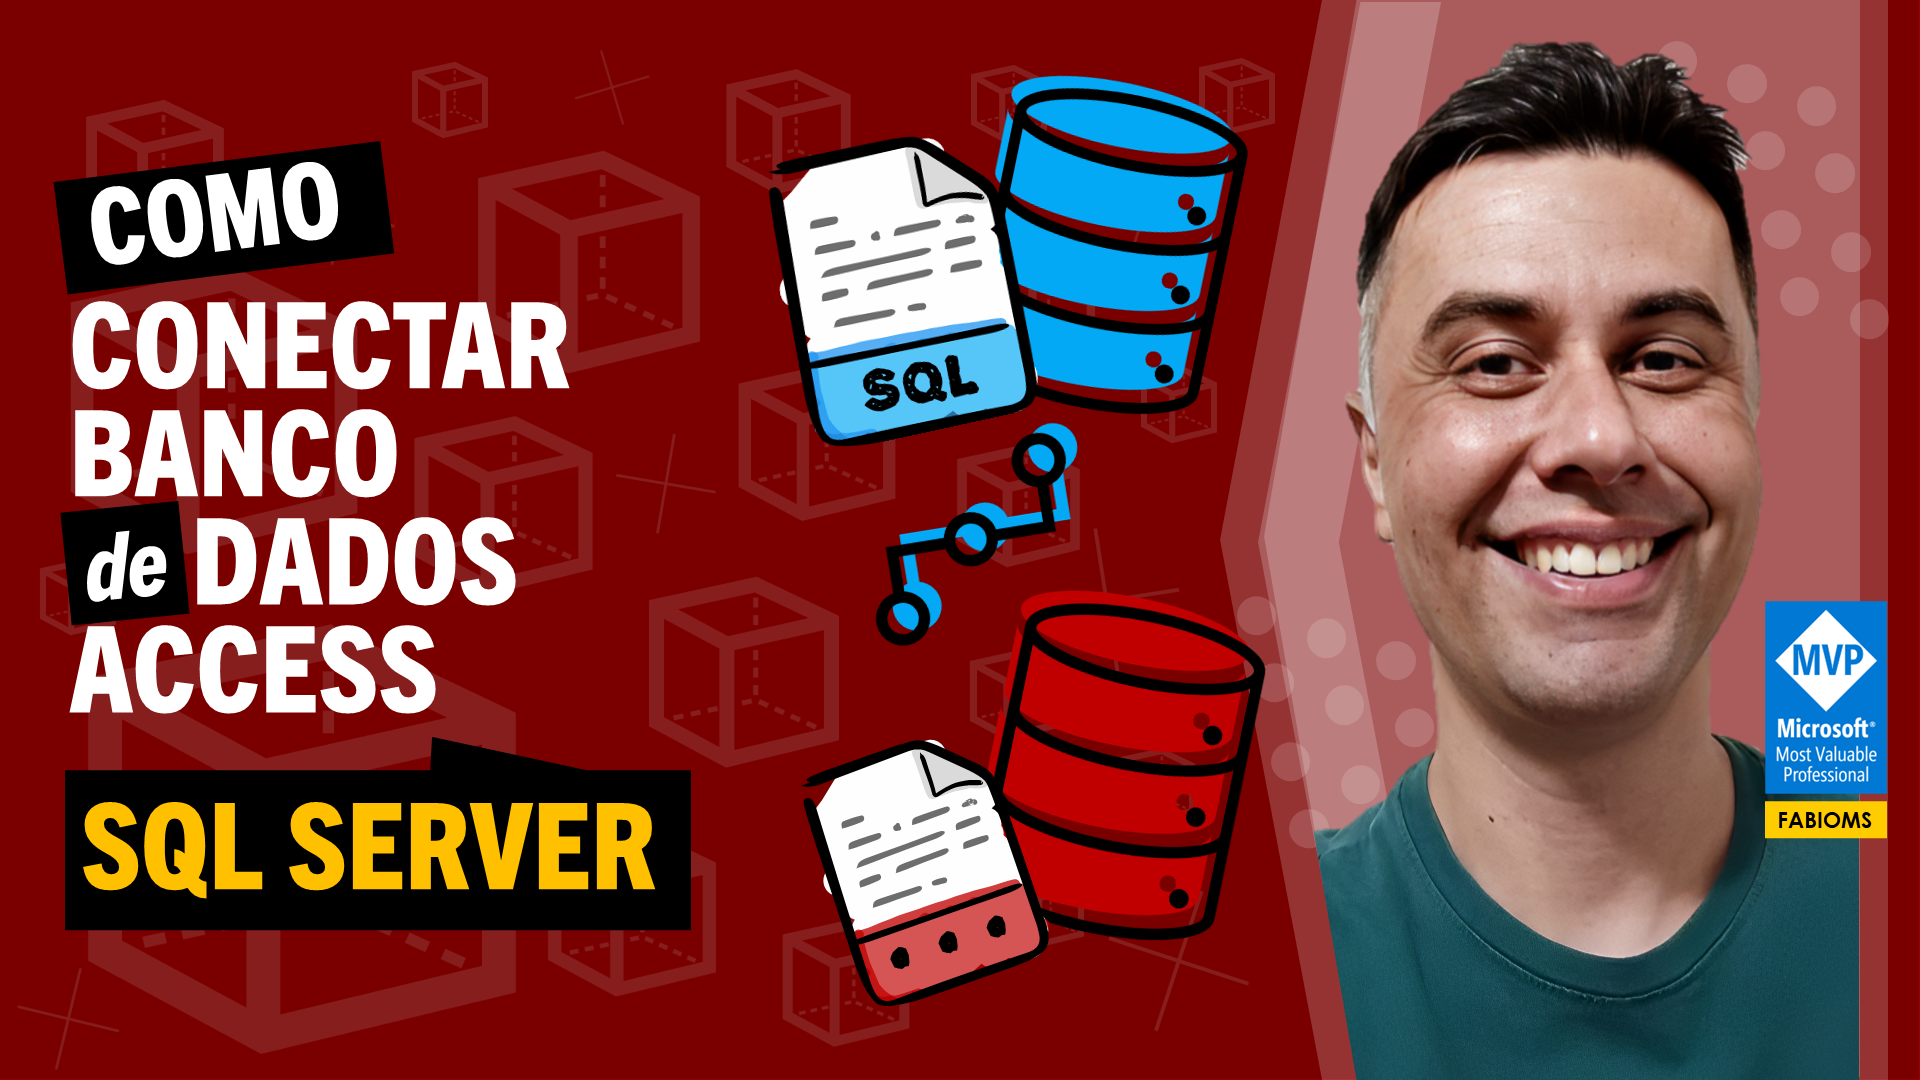 Como Conectar Banco de Dados Access no SQL Server